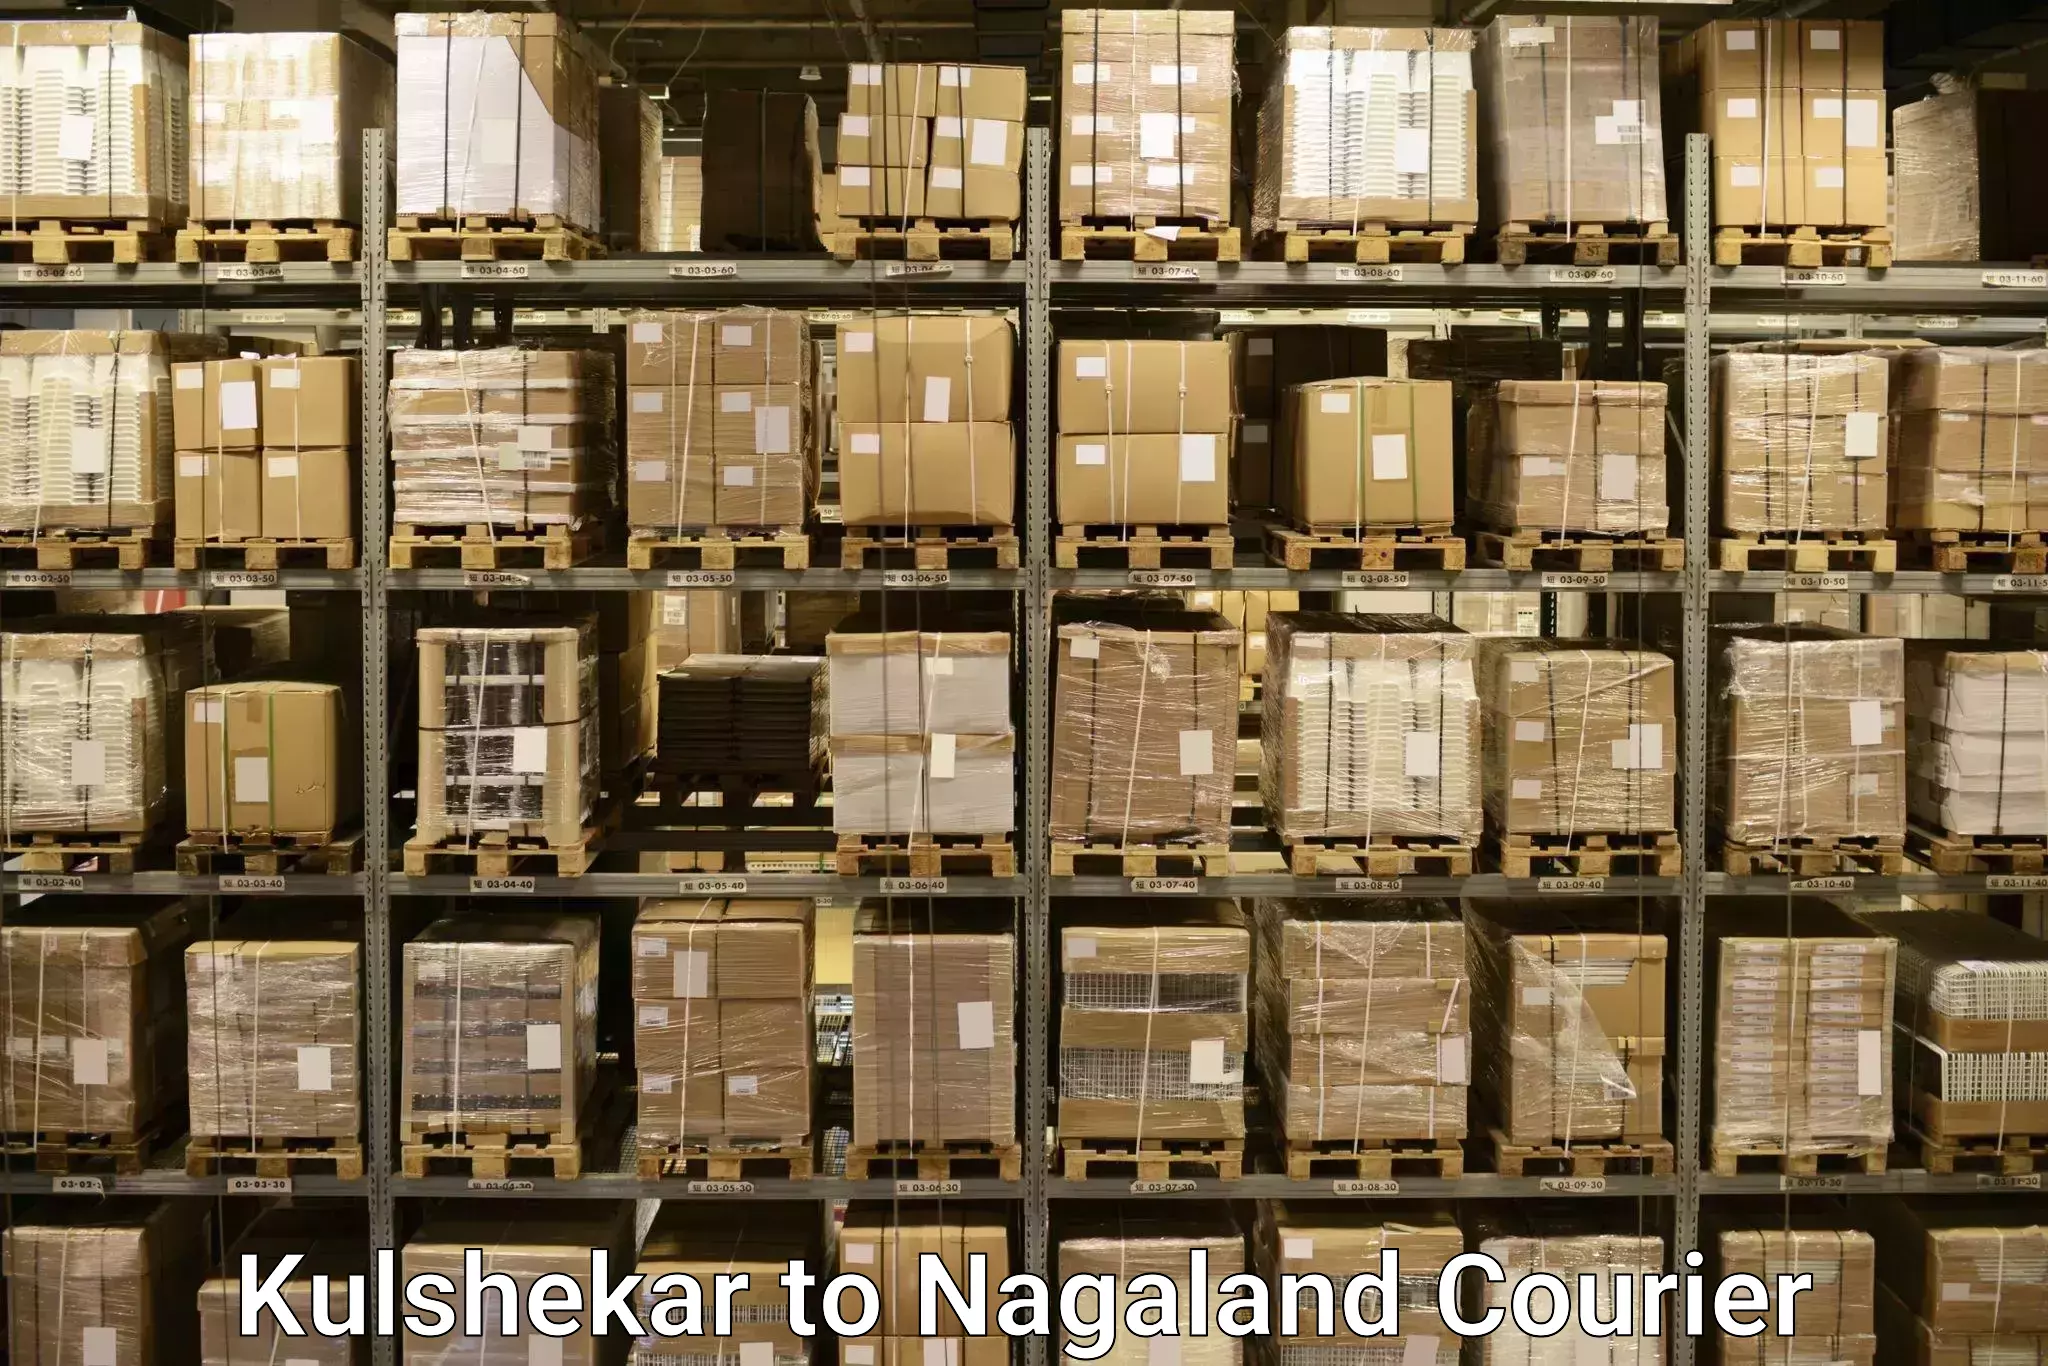 Urgent luggage shipment in Kulshekar to Nagaland